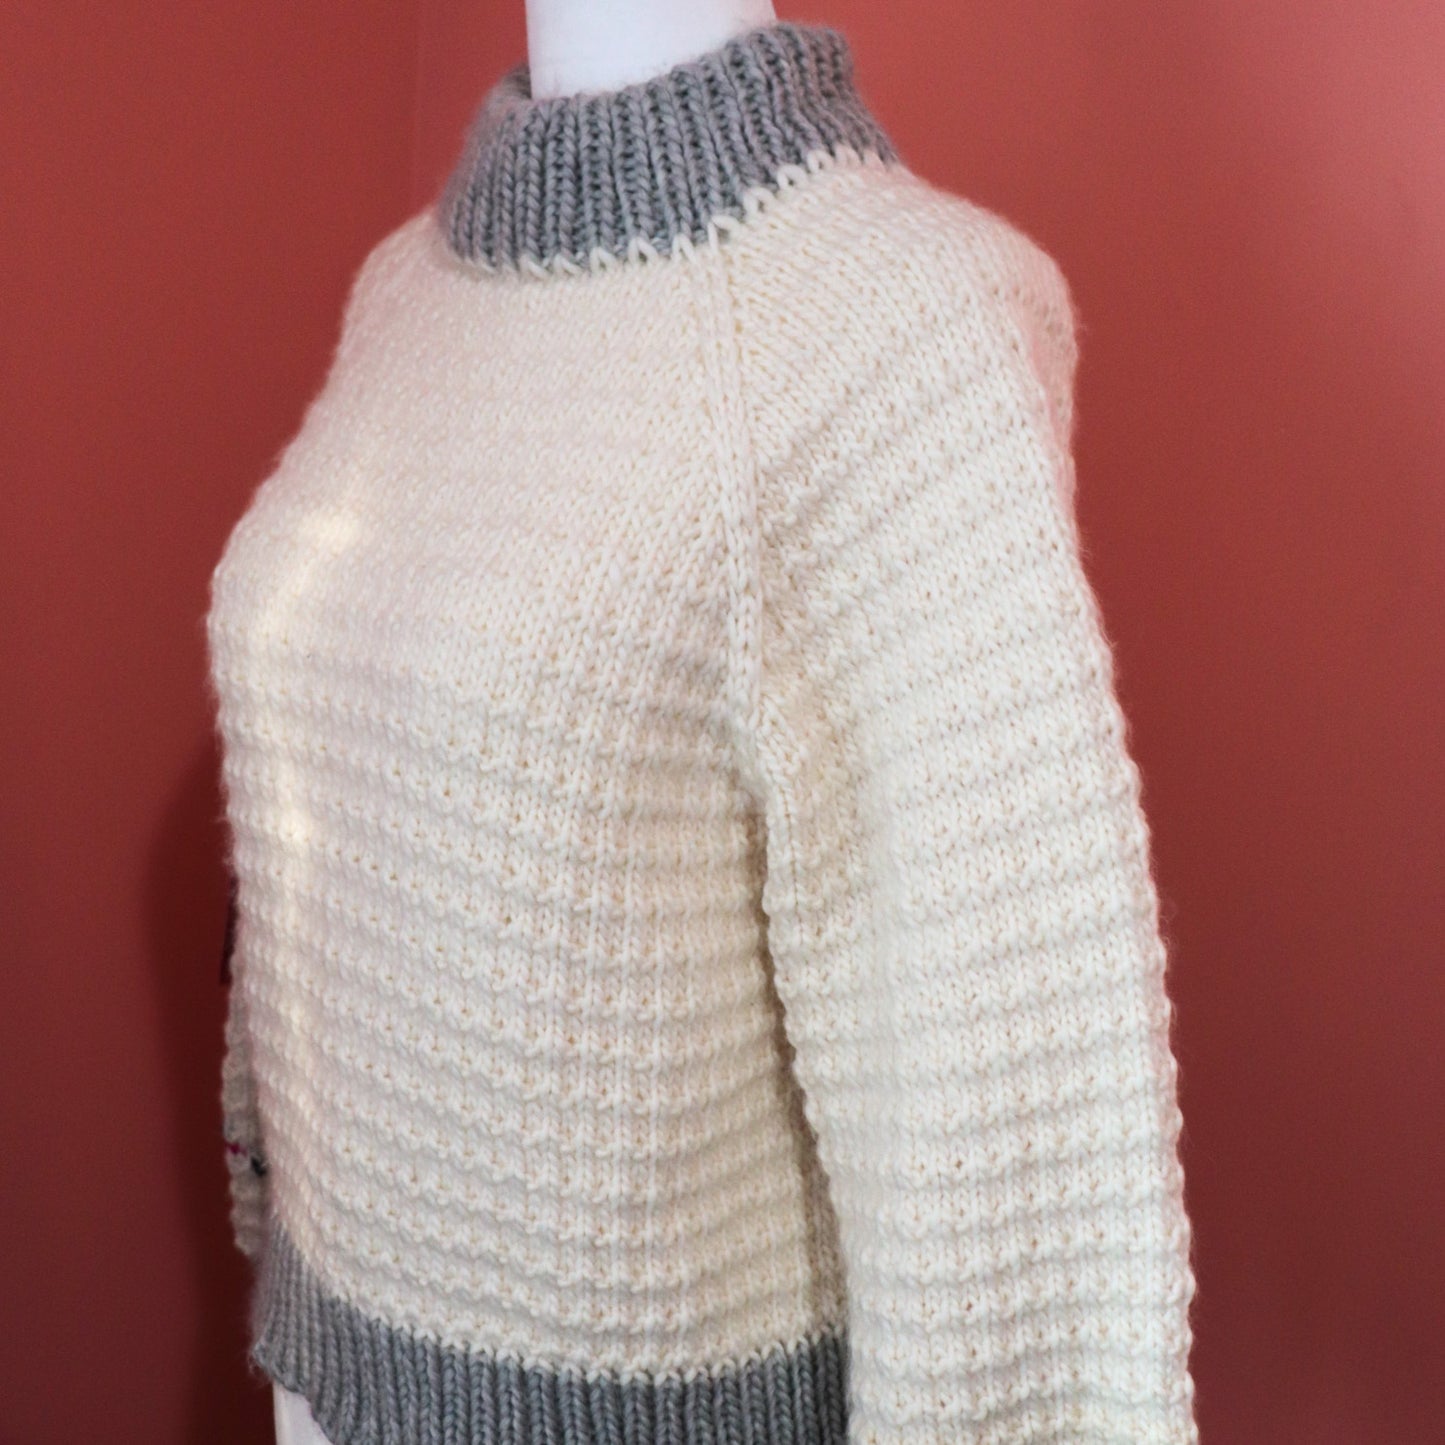 Merino Thin Sweater in White and Grey